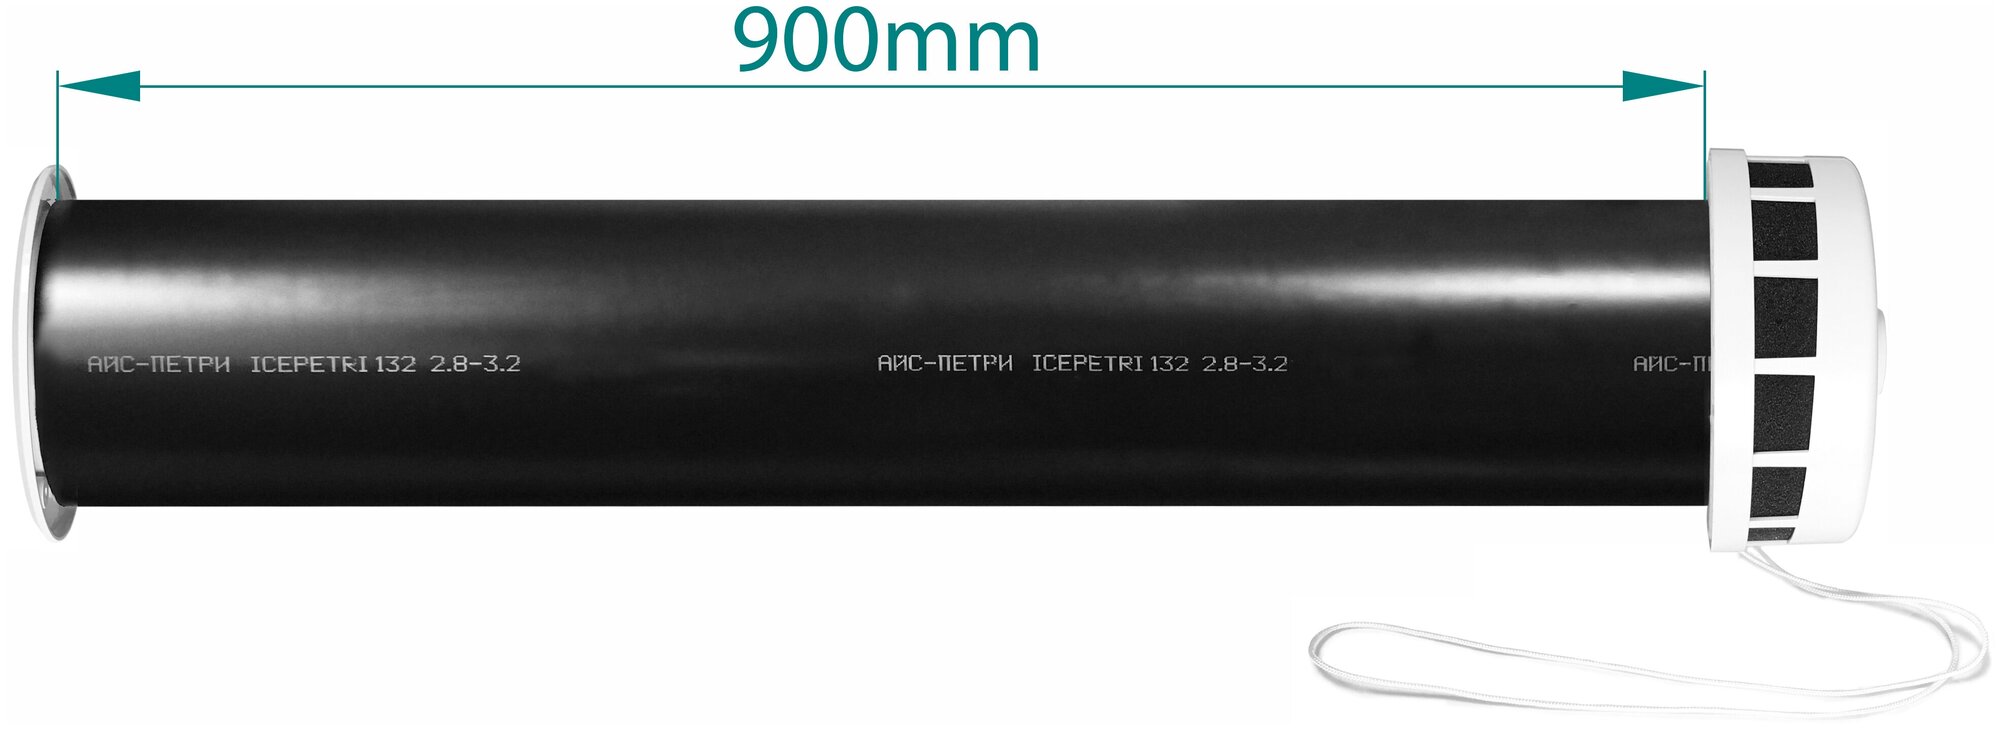 Приточный клапан КИВ-125 icepetri 900мм с ППУ и алюминиевой решеткой - фотография № 2